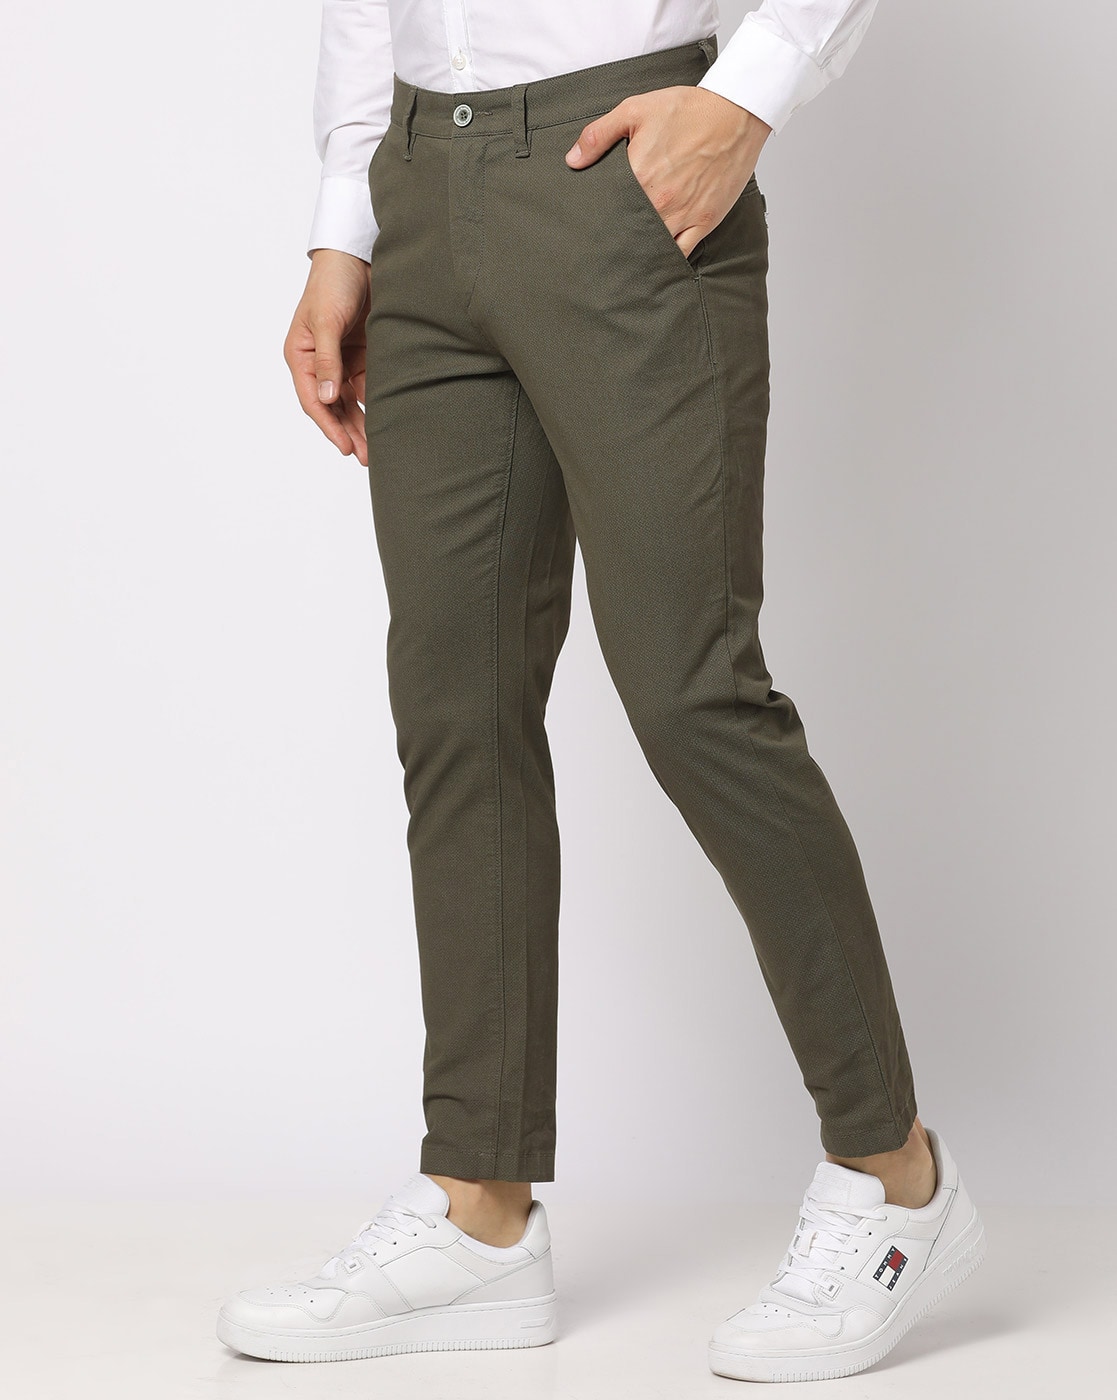 Duckling Ikigai Olive Pants For Men – Notre Âme